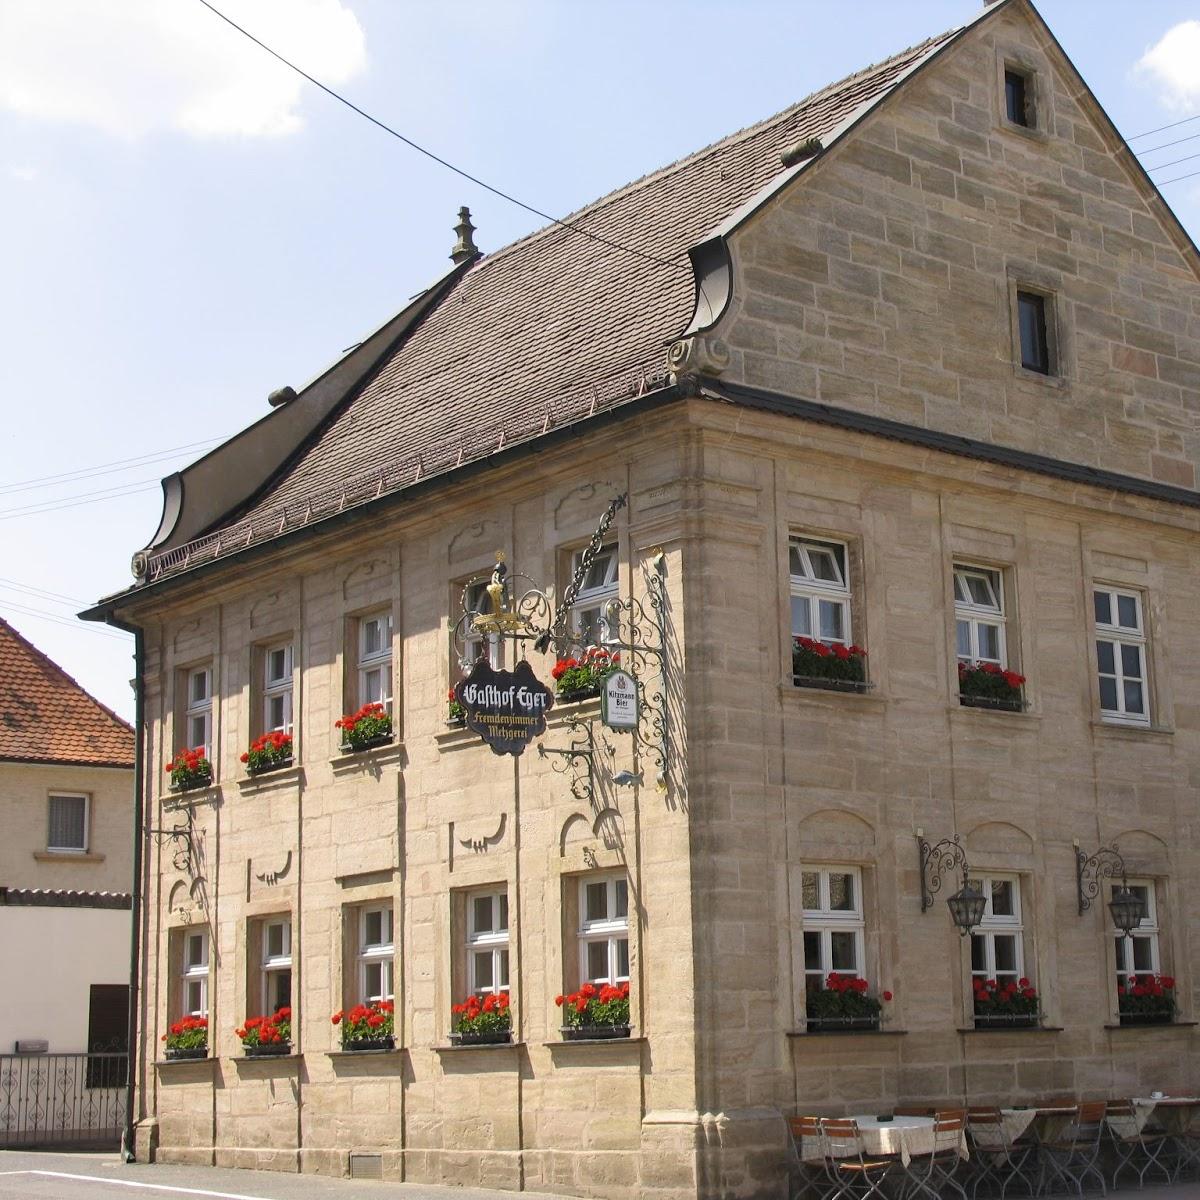 Restaurant "Gasthaus Eger" in Pinzberg